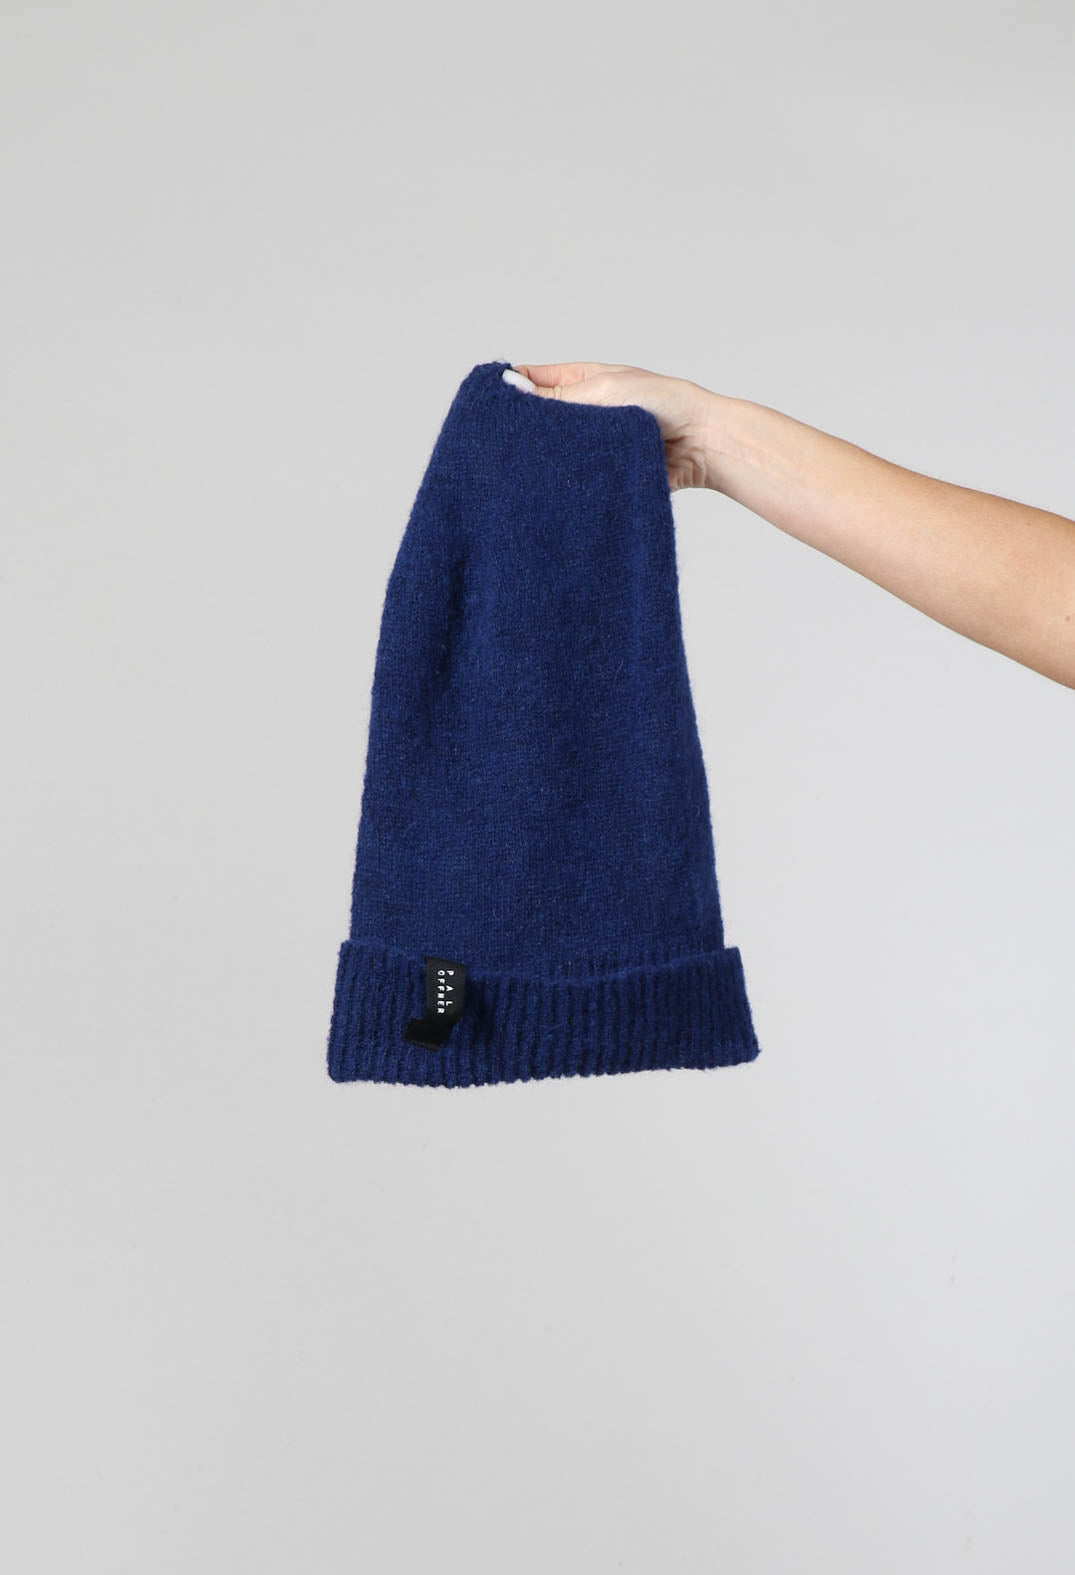 Winter Knit Beanie in Gentian Blue